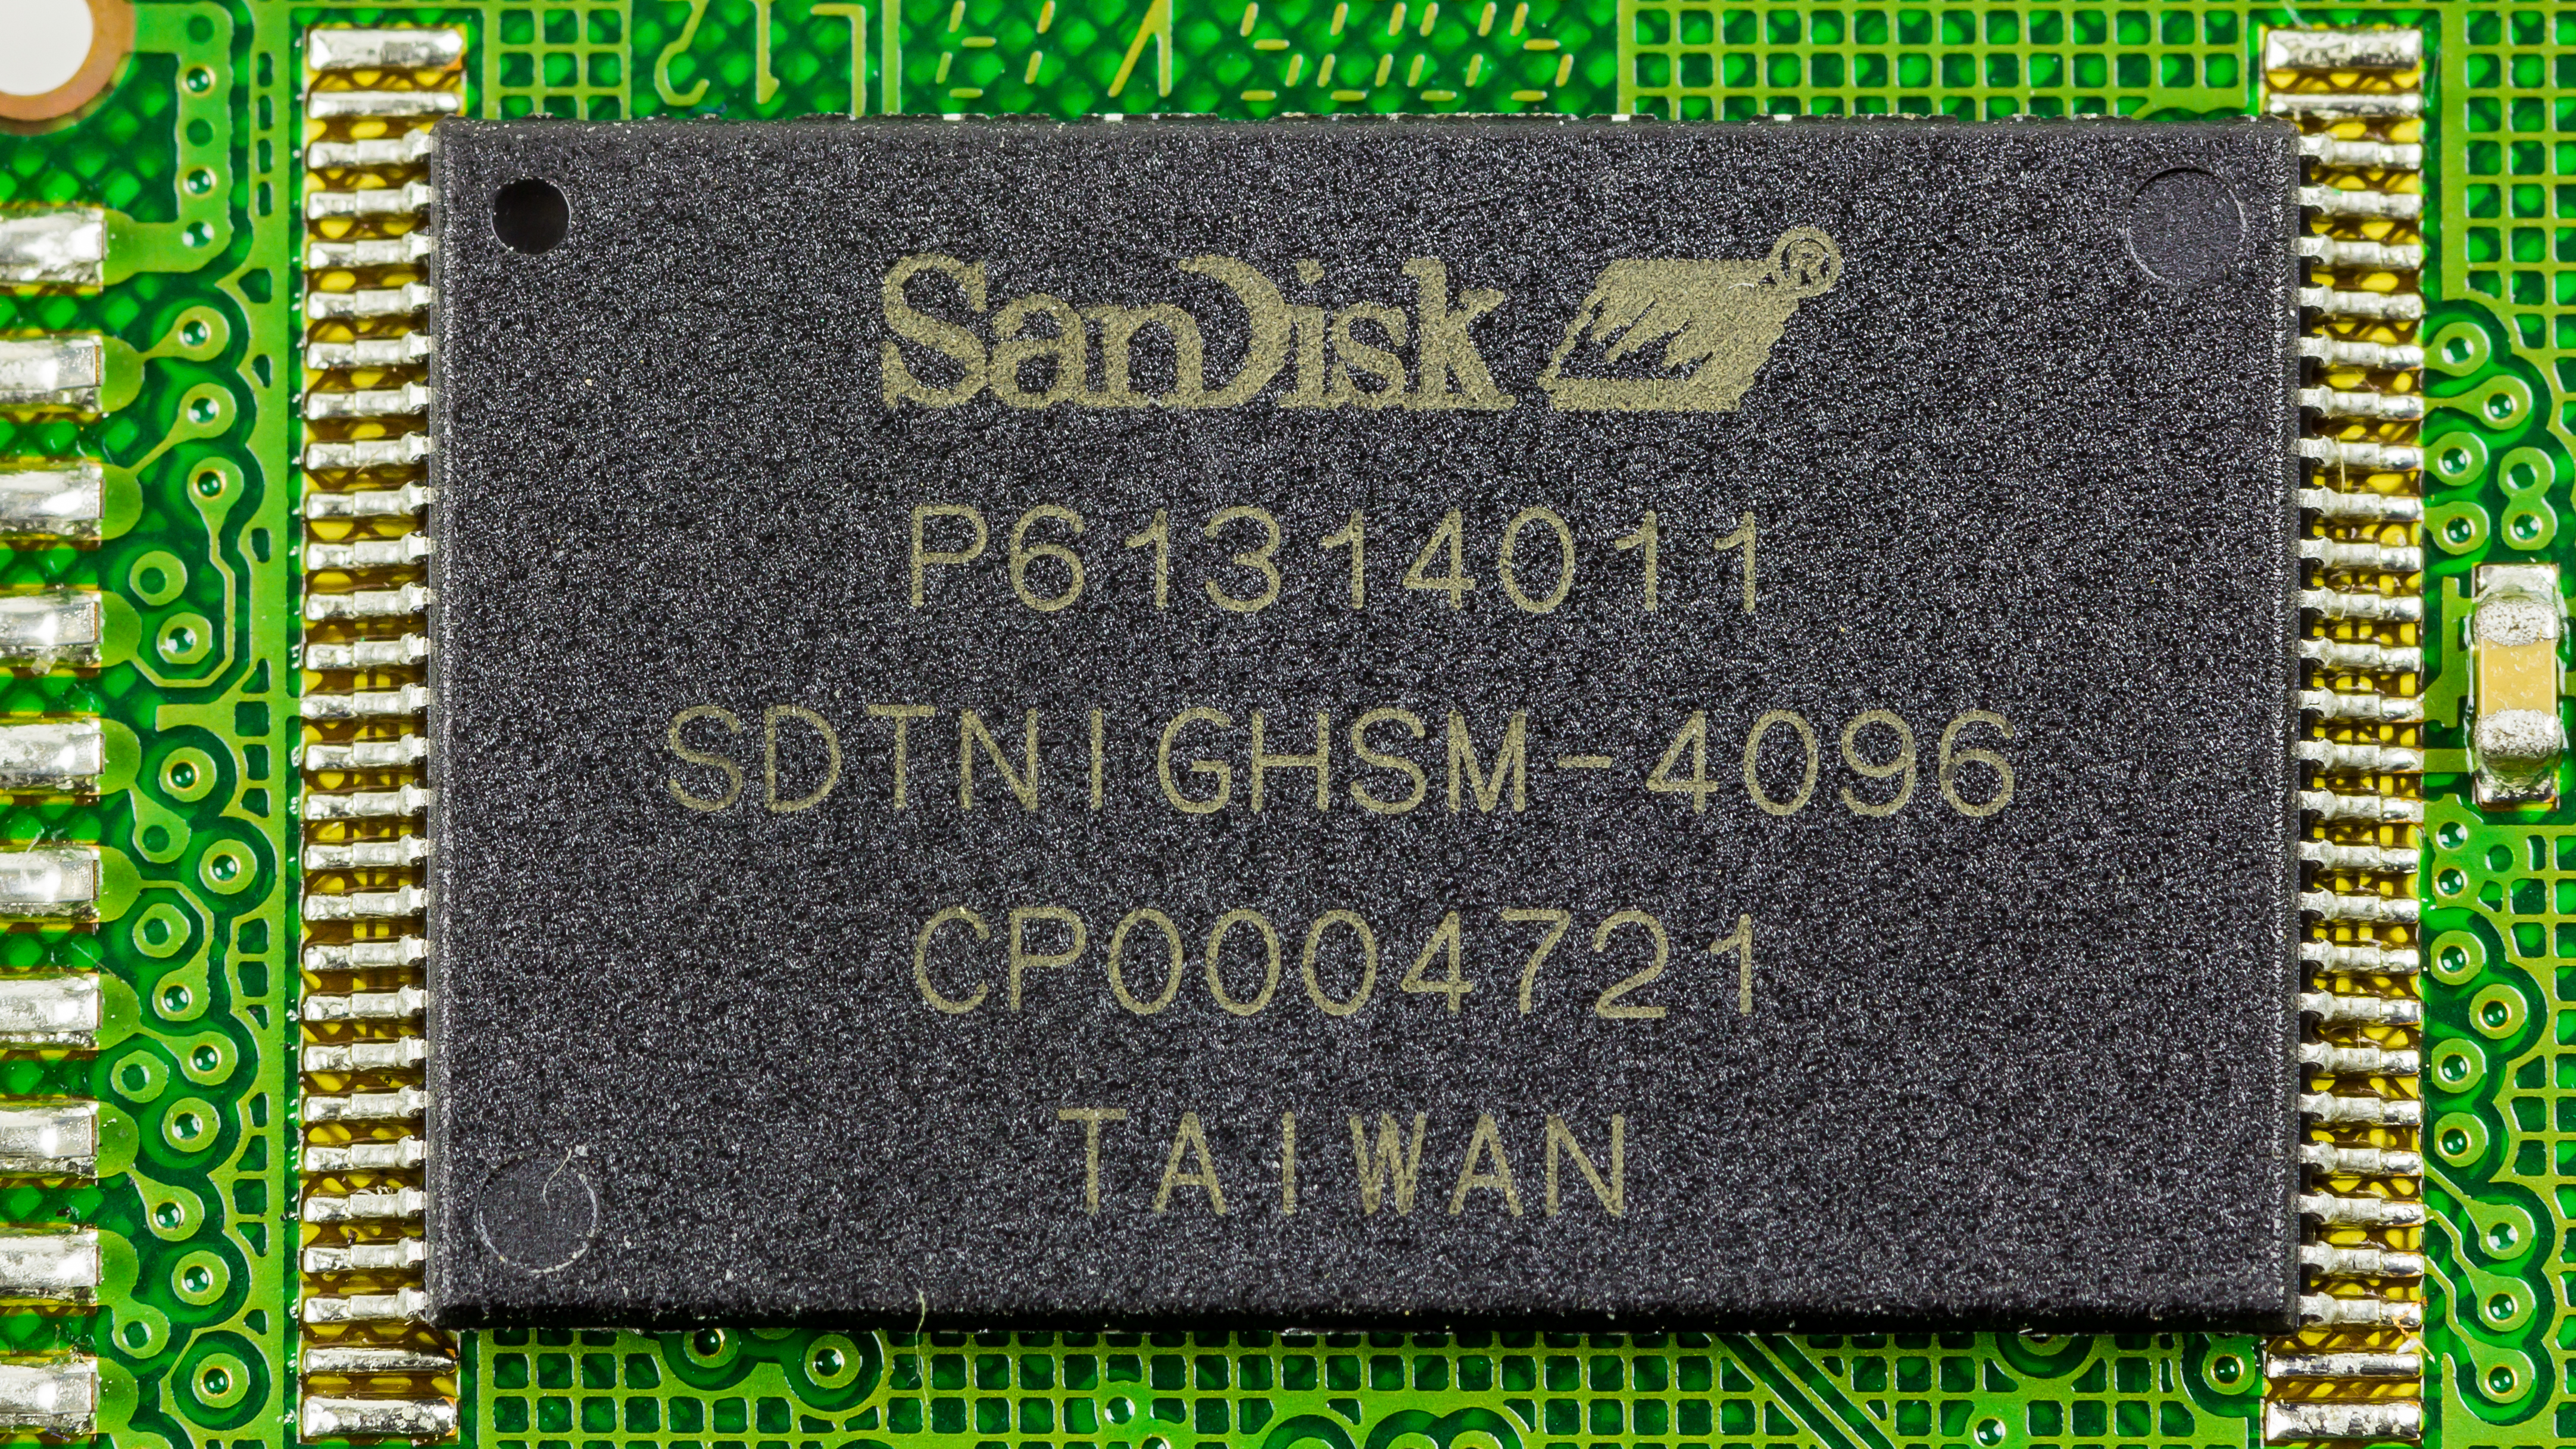 File:CompactFlash SanDisk Ultra II 1 GB - SanDisk SDTNIGHSM-4096